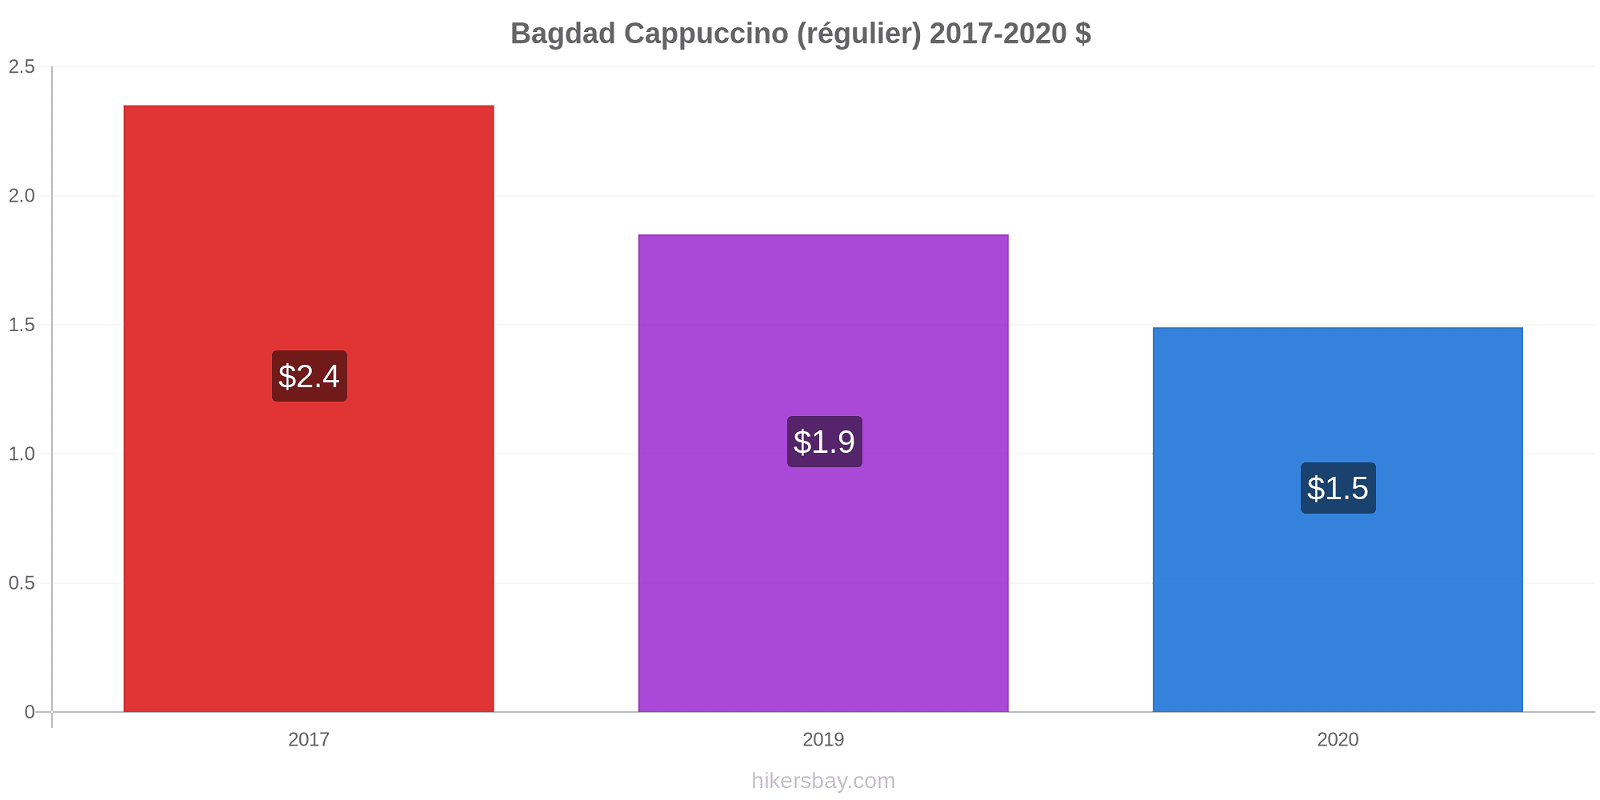 Bagdad changements de prix Cappuccino (régulier) hikersbay.com